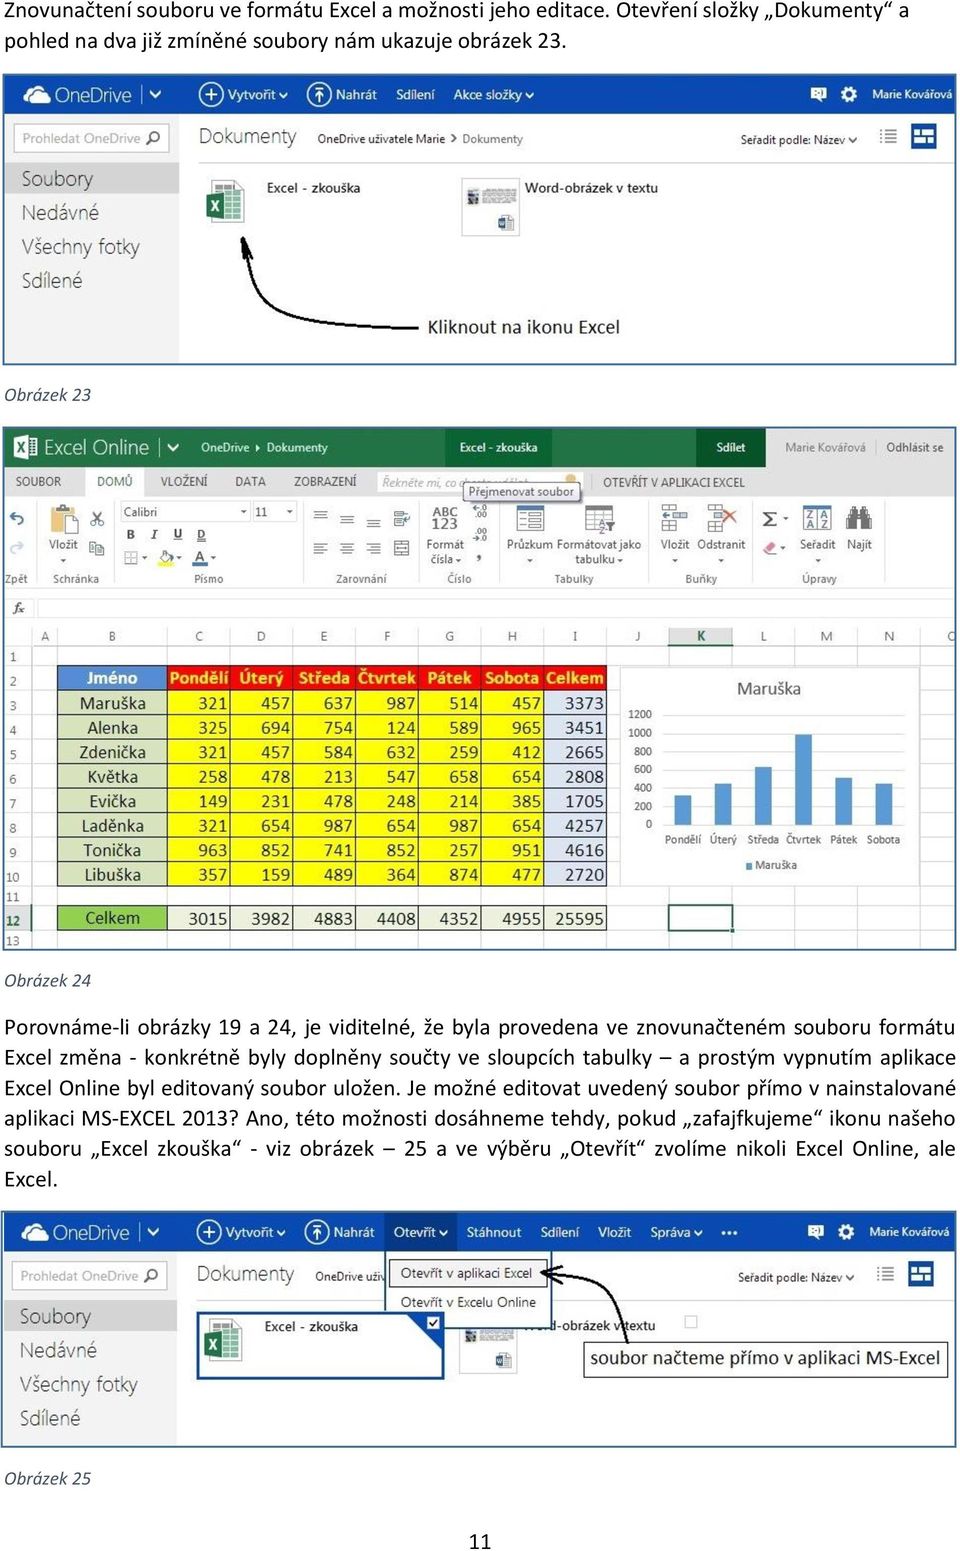 sloupcích tabulky a prostým vypnutím aplikace Excel Online byl editovaný soubor uložen. Je možné editovat uvedený soubor přímo v nainstalované aplikaci MS-EXCEL 2013?